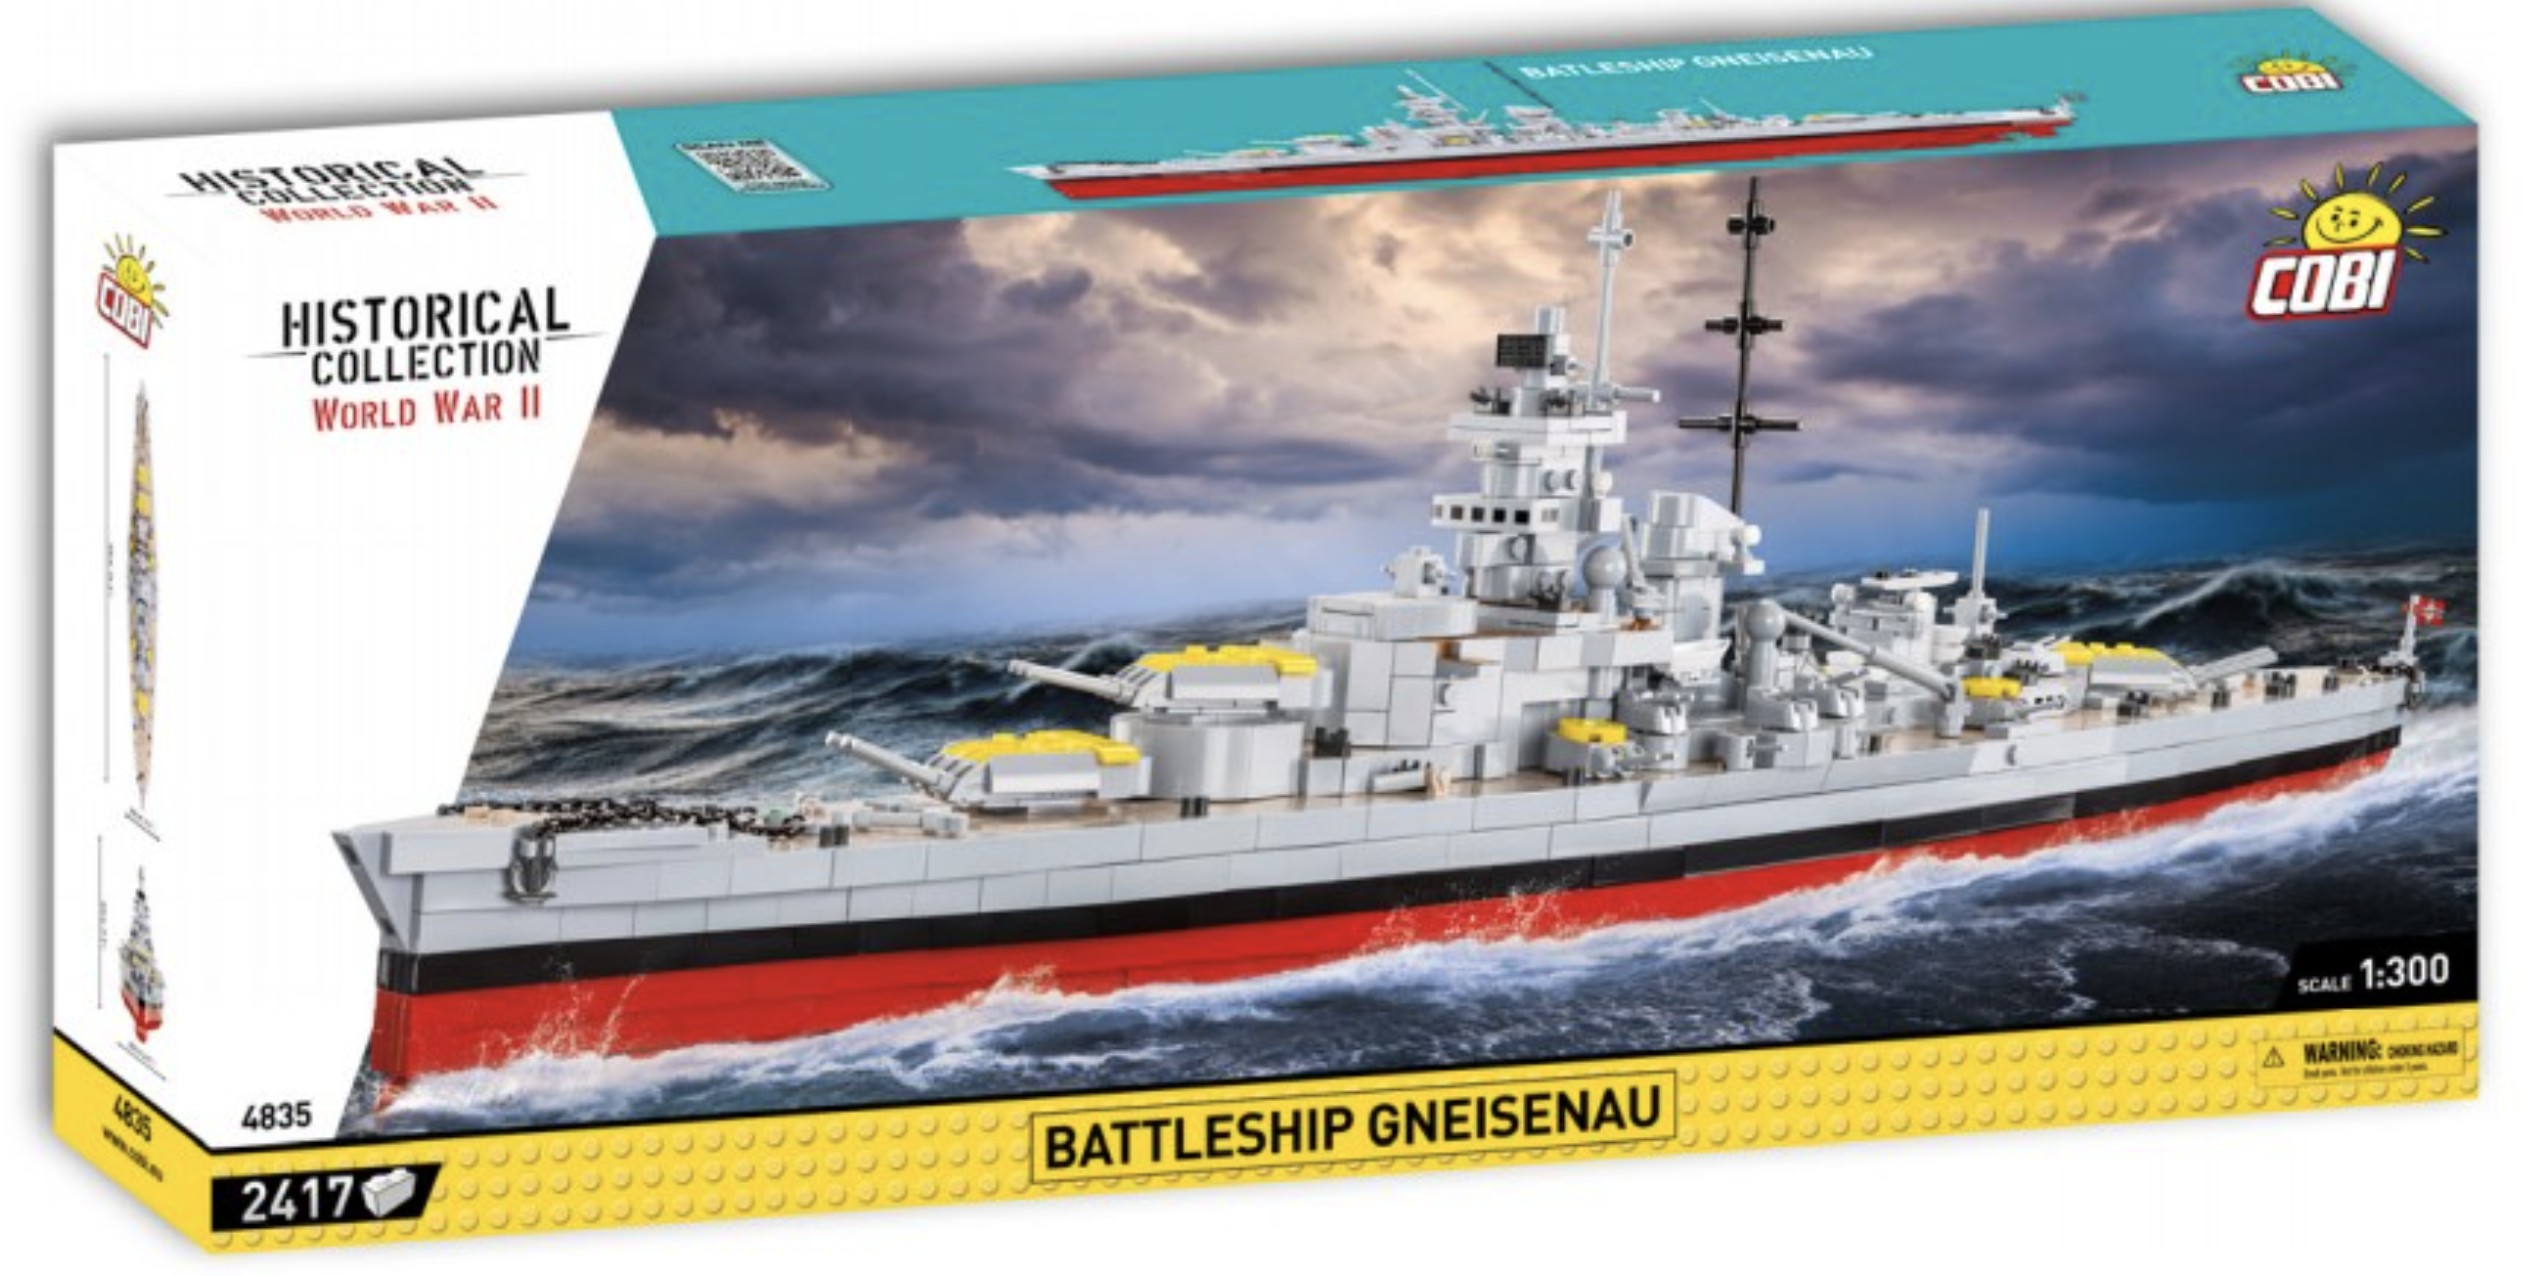 4835 - Battleship Gneisenau